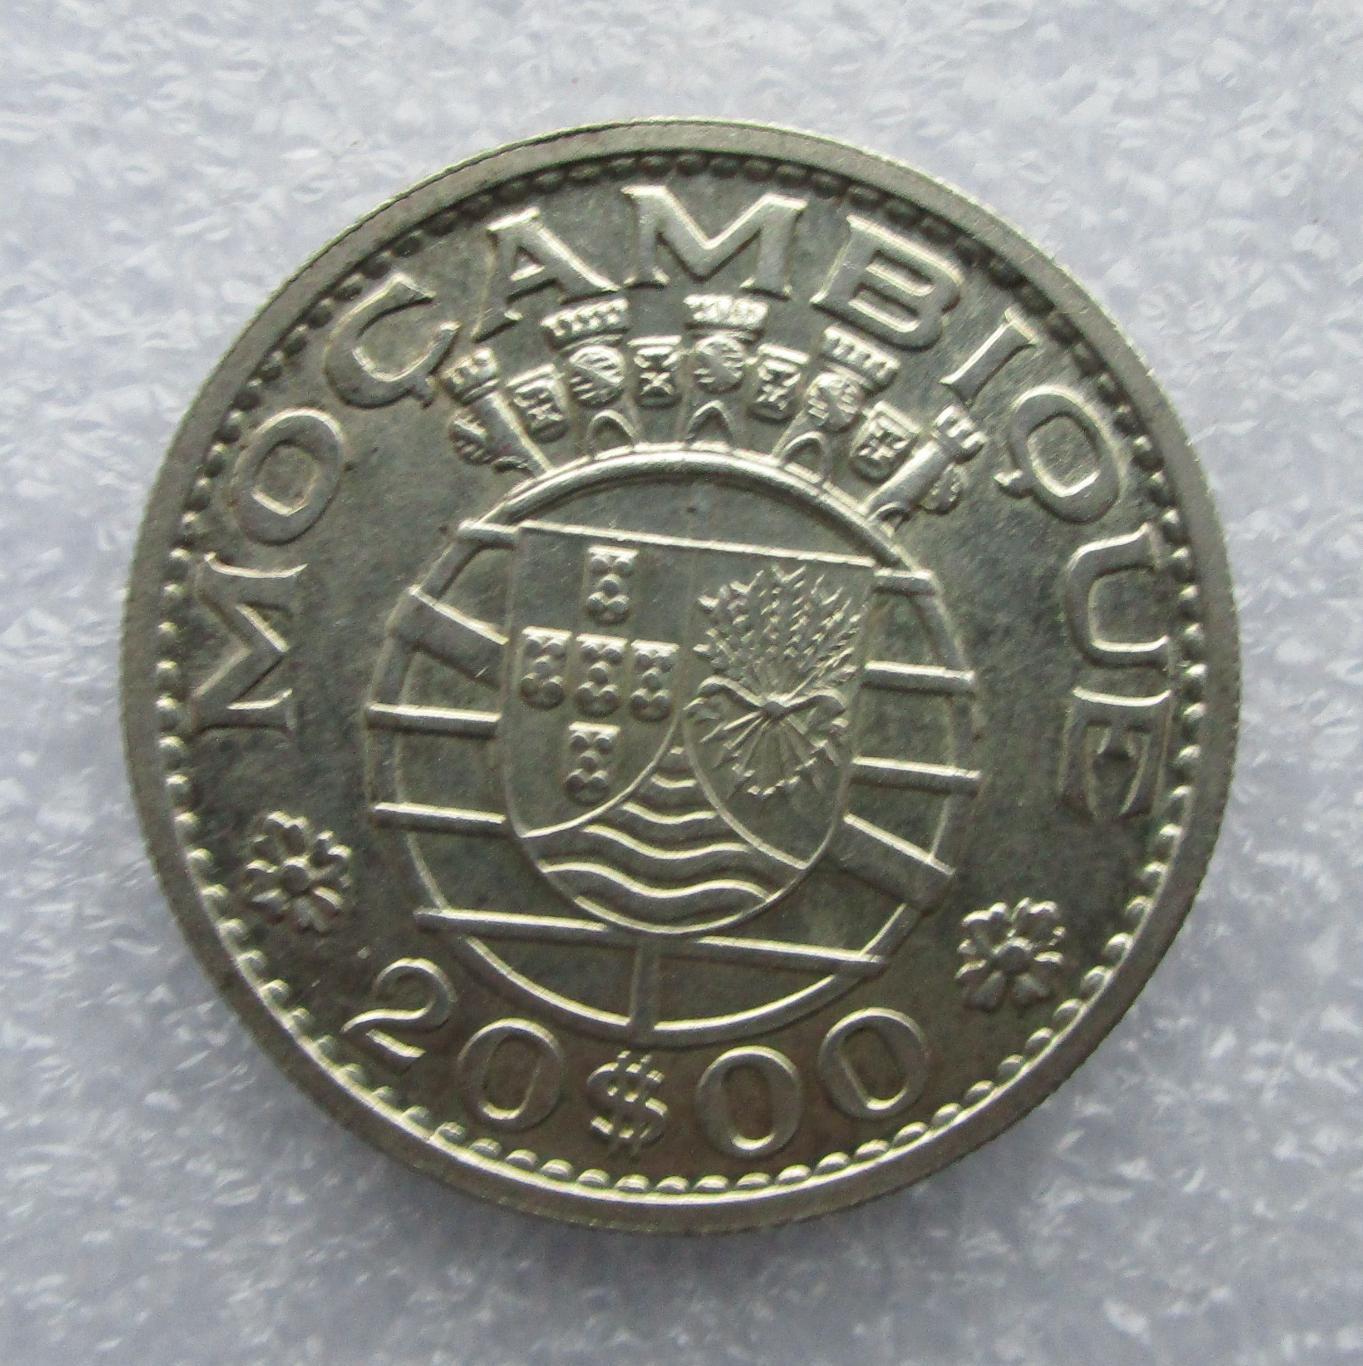 Мозамбик 20 эскудо, 1960. Серебро. UNC. Штемпельный блеск.